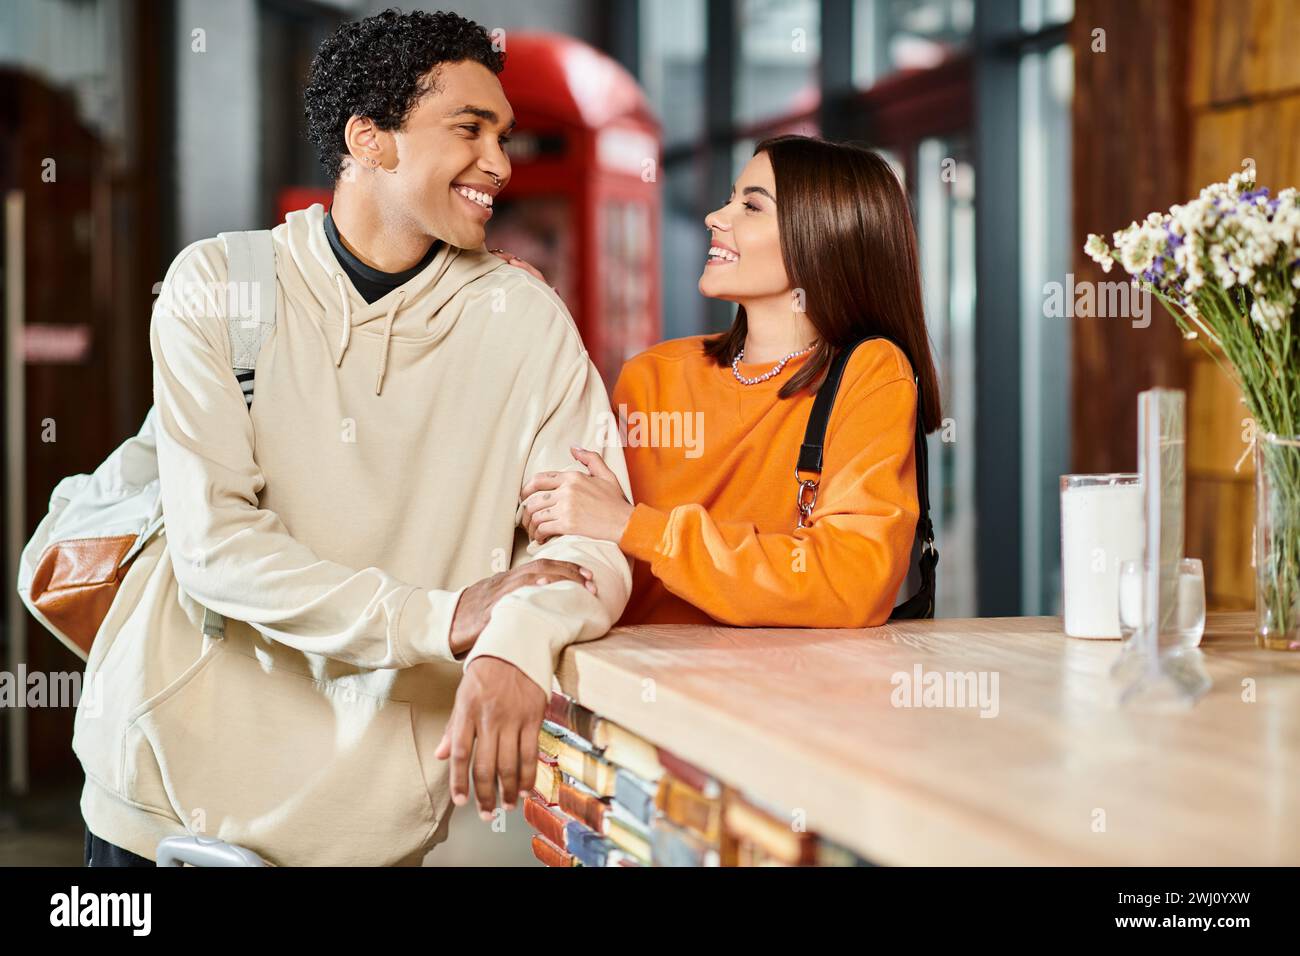 Glücklicher schwarzer Mann und eine Frau, die ein Gespräch genießen, während sie an der Rezeption im Hostel stehen Stockfoto